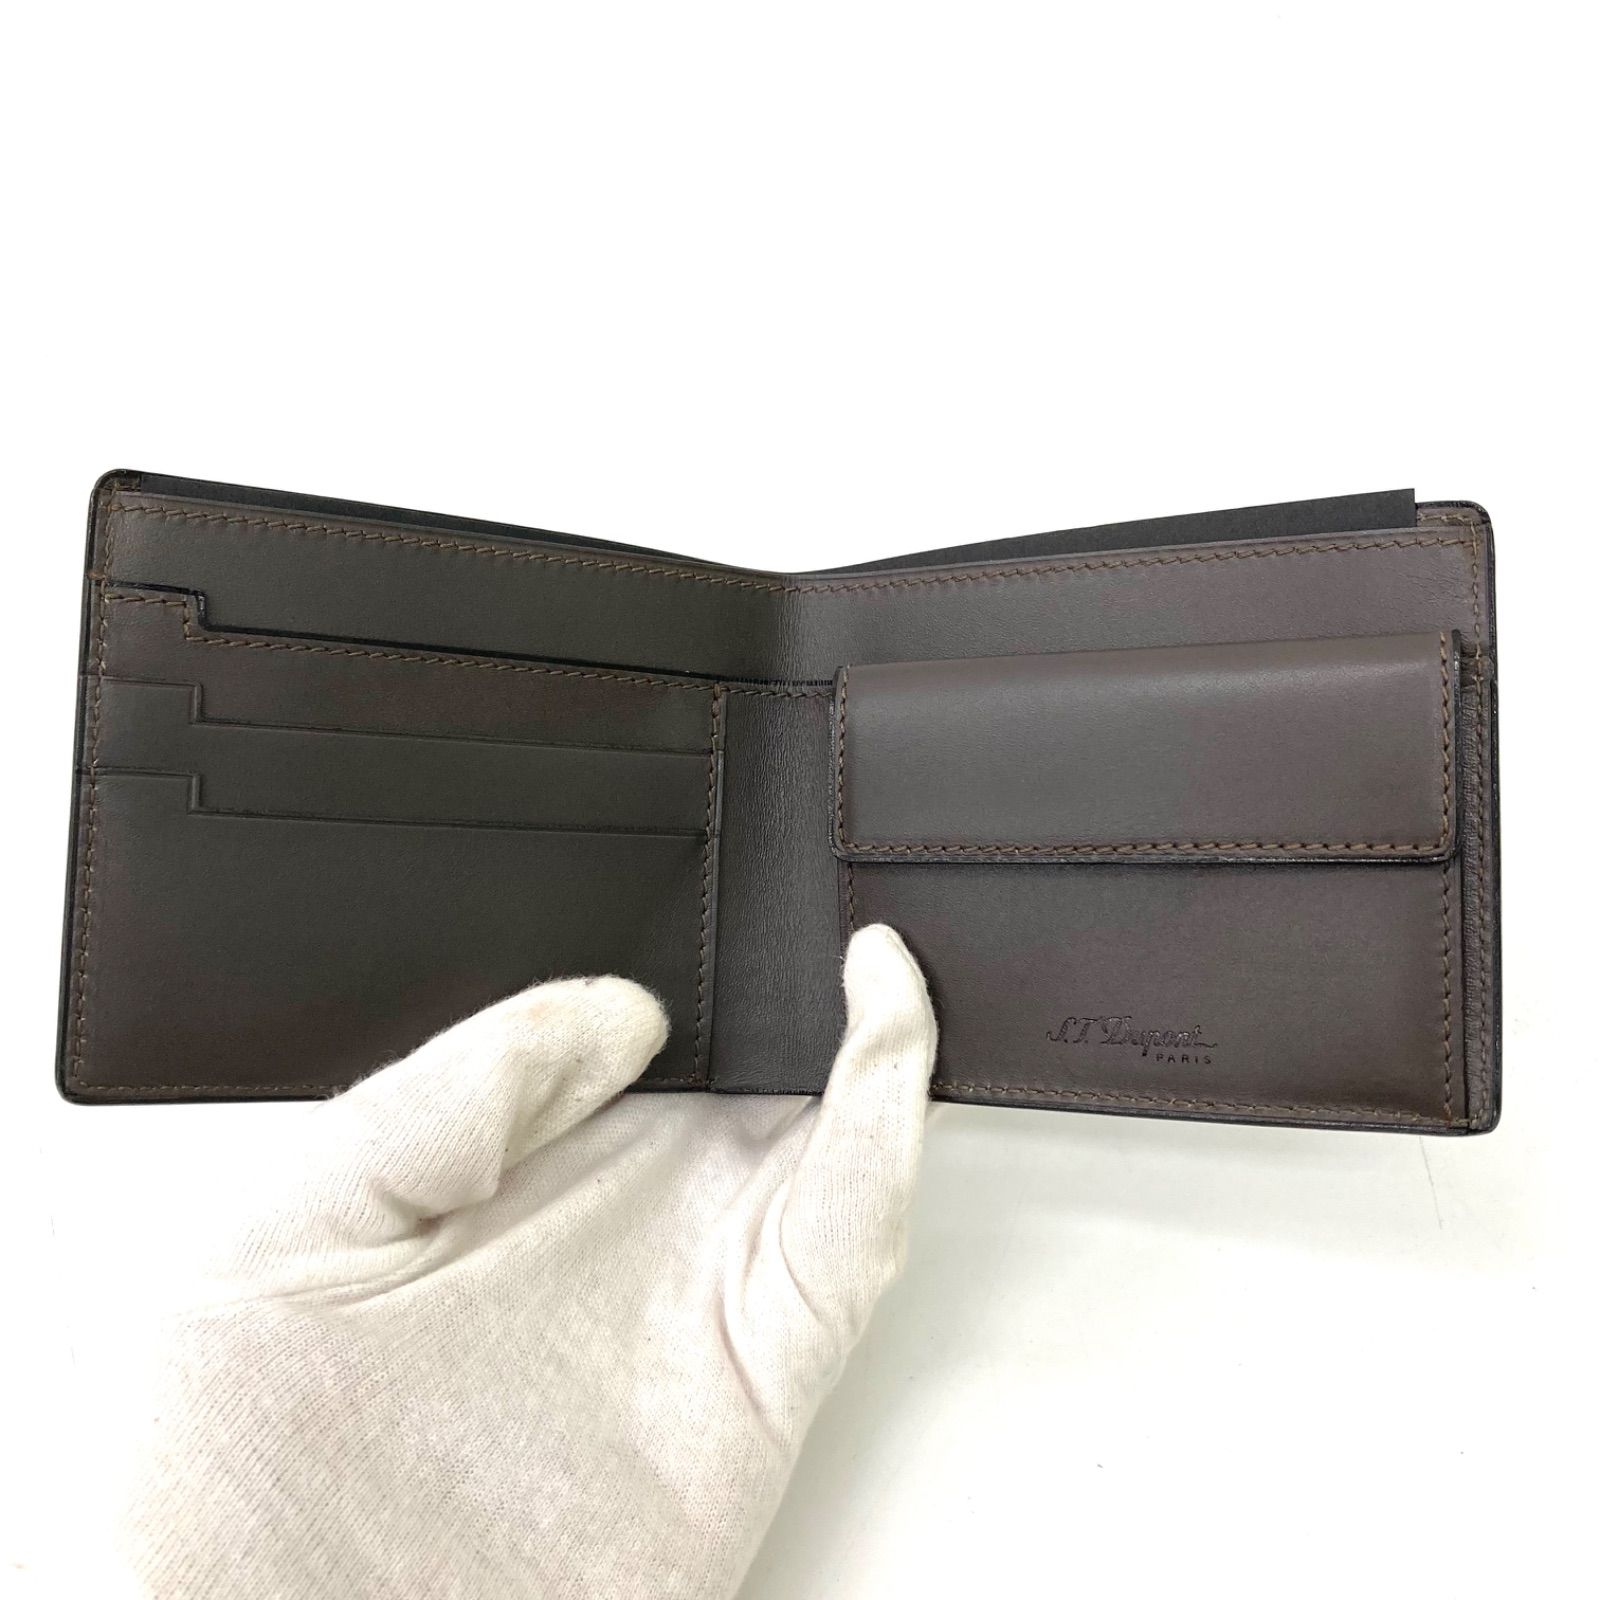 保存袋値下げ【新品未使用】S.T.Dupont エステー・デュポン 二つ折り財布